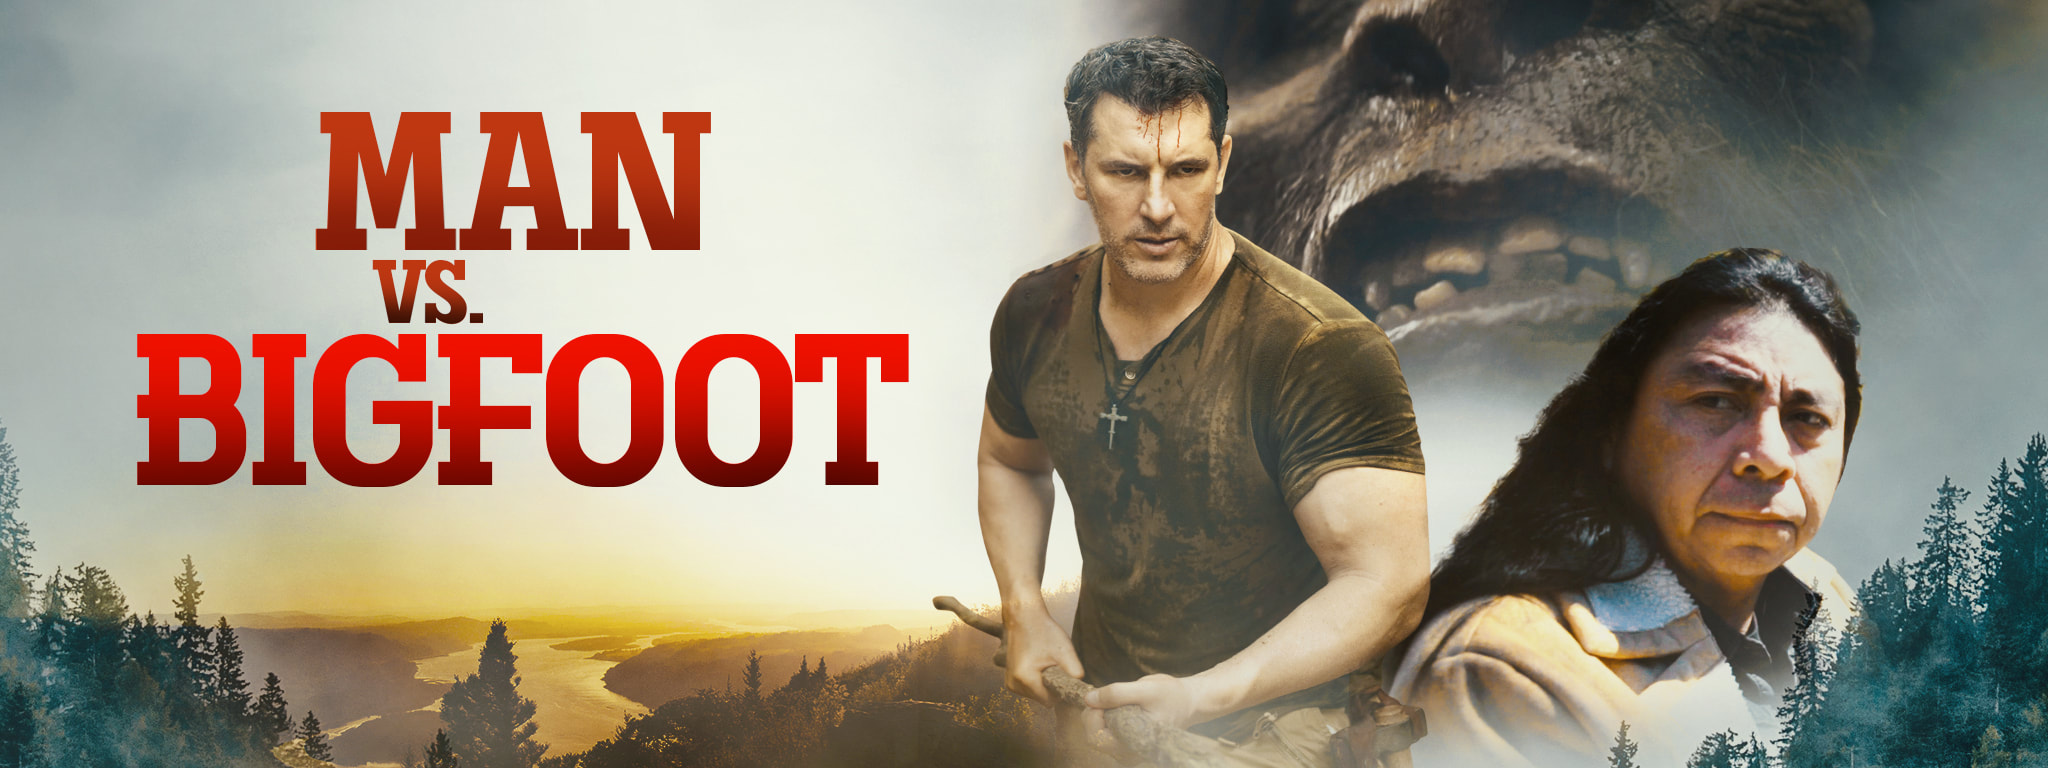 Man V Bigfoot Review.